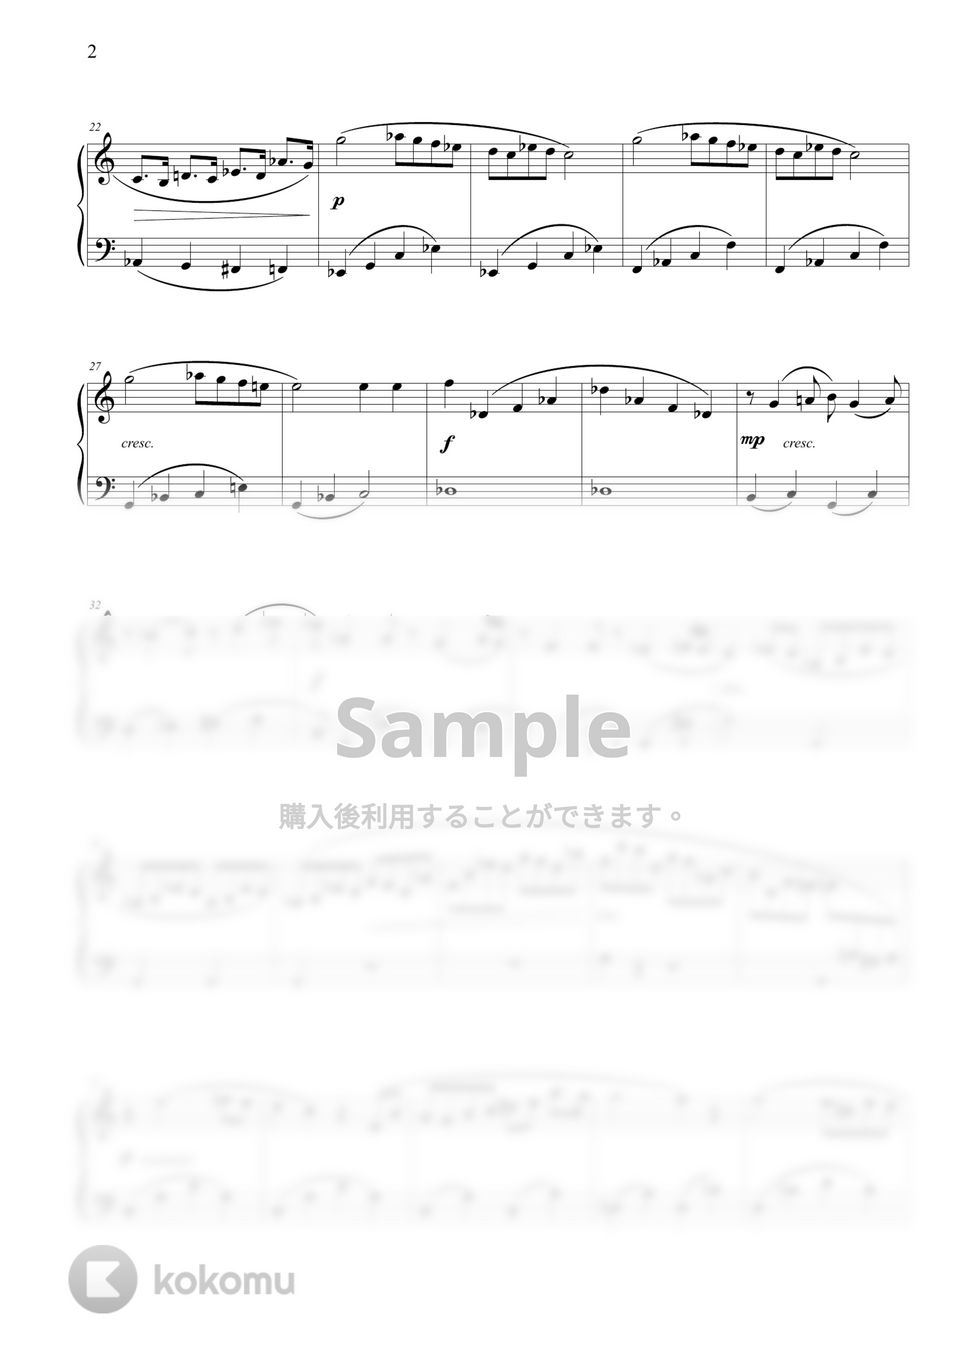 ショパン(F. Chopin) - ピアノ・ソナタ第3番 (初級バージョン) by THIS IS PIANO